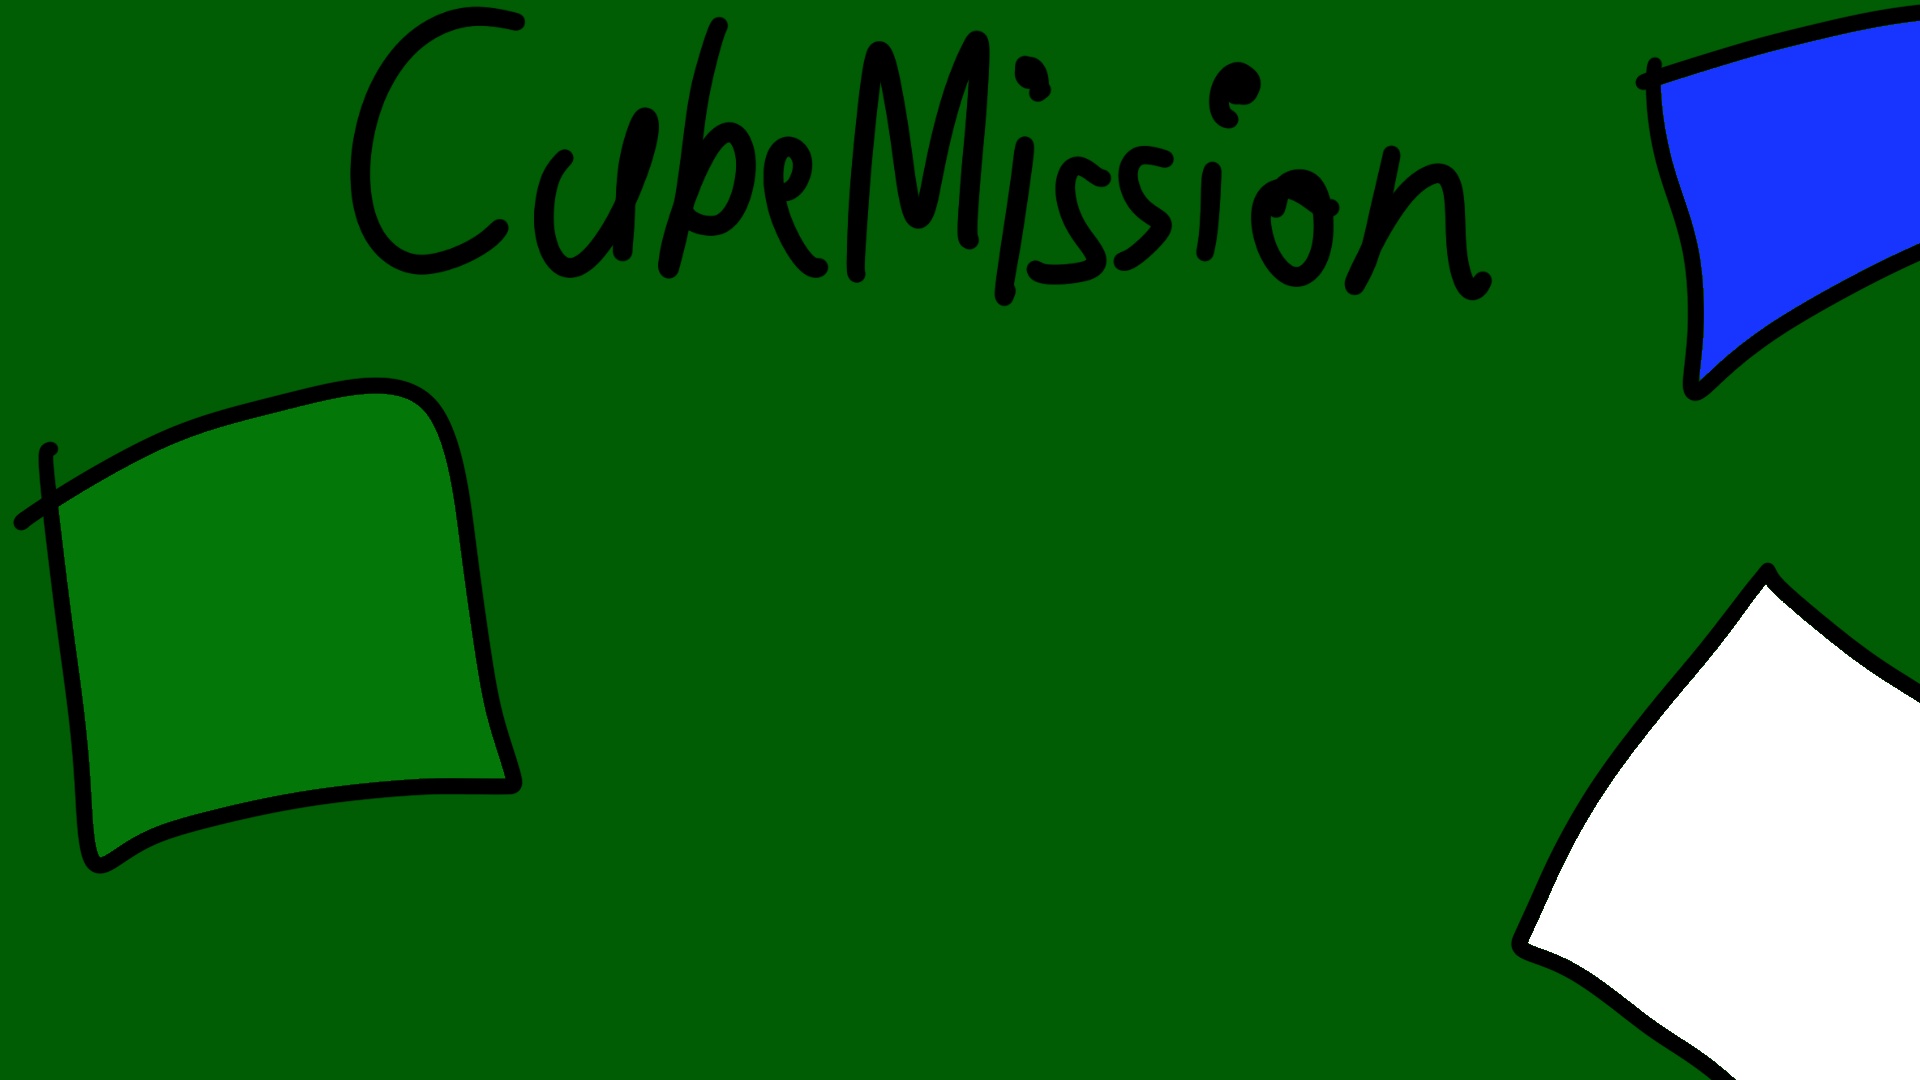 CubeMission (Early Prototype)